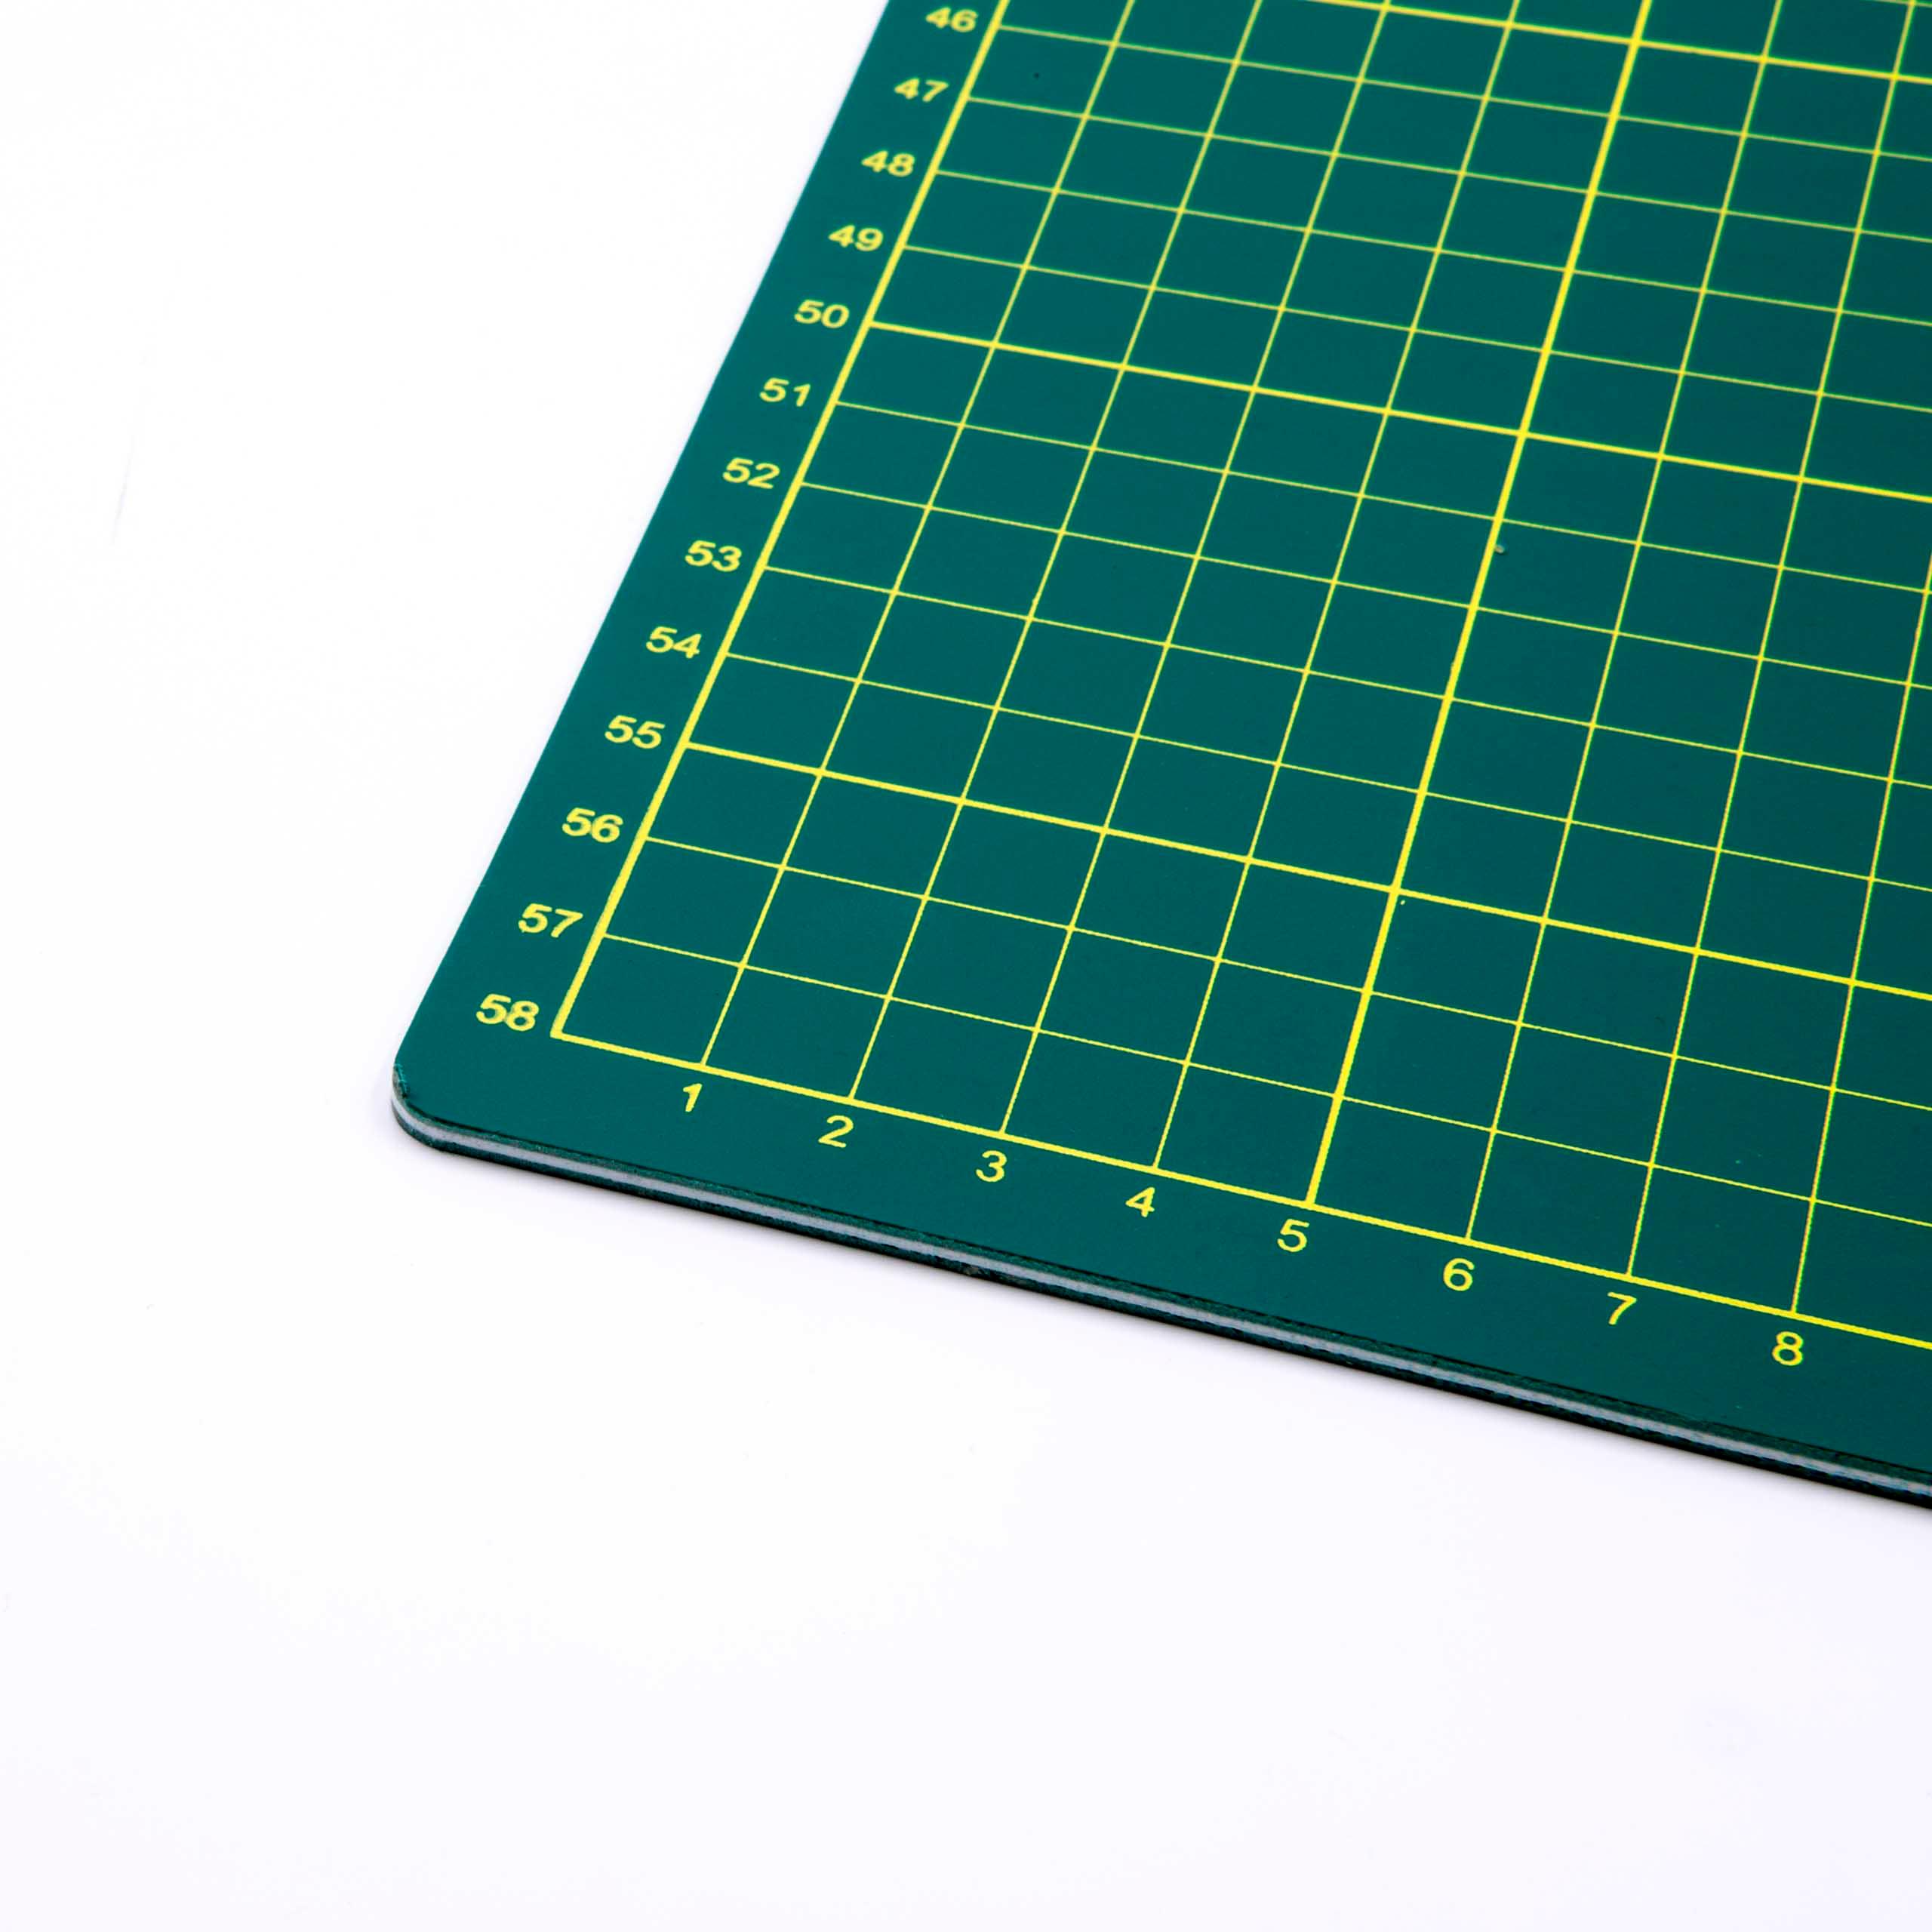 Base de corte - A1 superficie de trabajo, 90 x 60 cm, autoreparable, con cuadrícula, doble cara